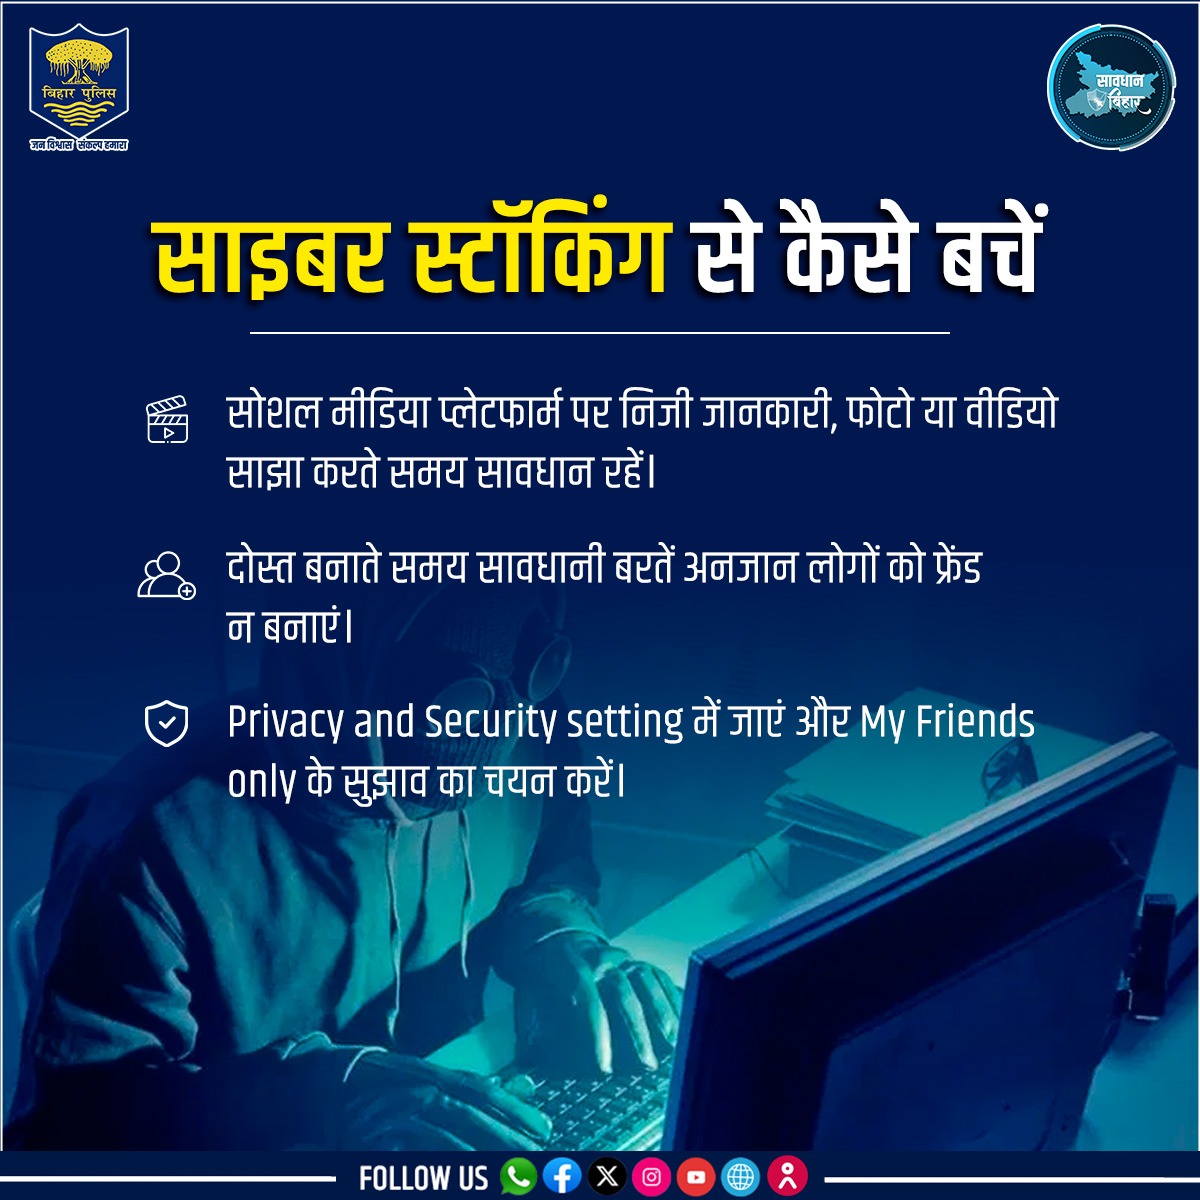 जानें साइबर स्टॉकिंग क्या है और इससे कैसे बचें...
.
.
#BiharPolice #cybersecurity #cyberawareness #Bihar